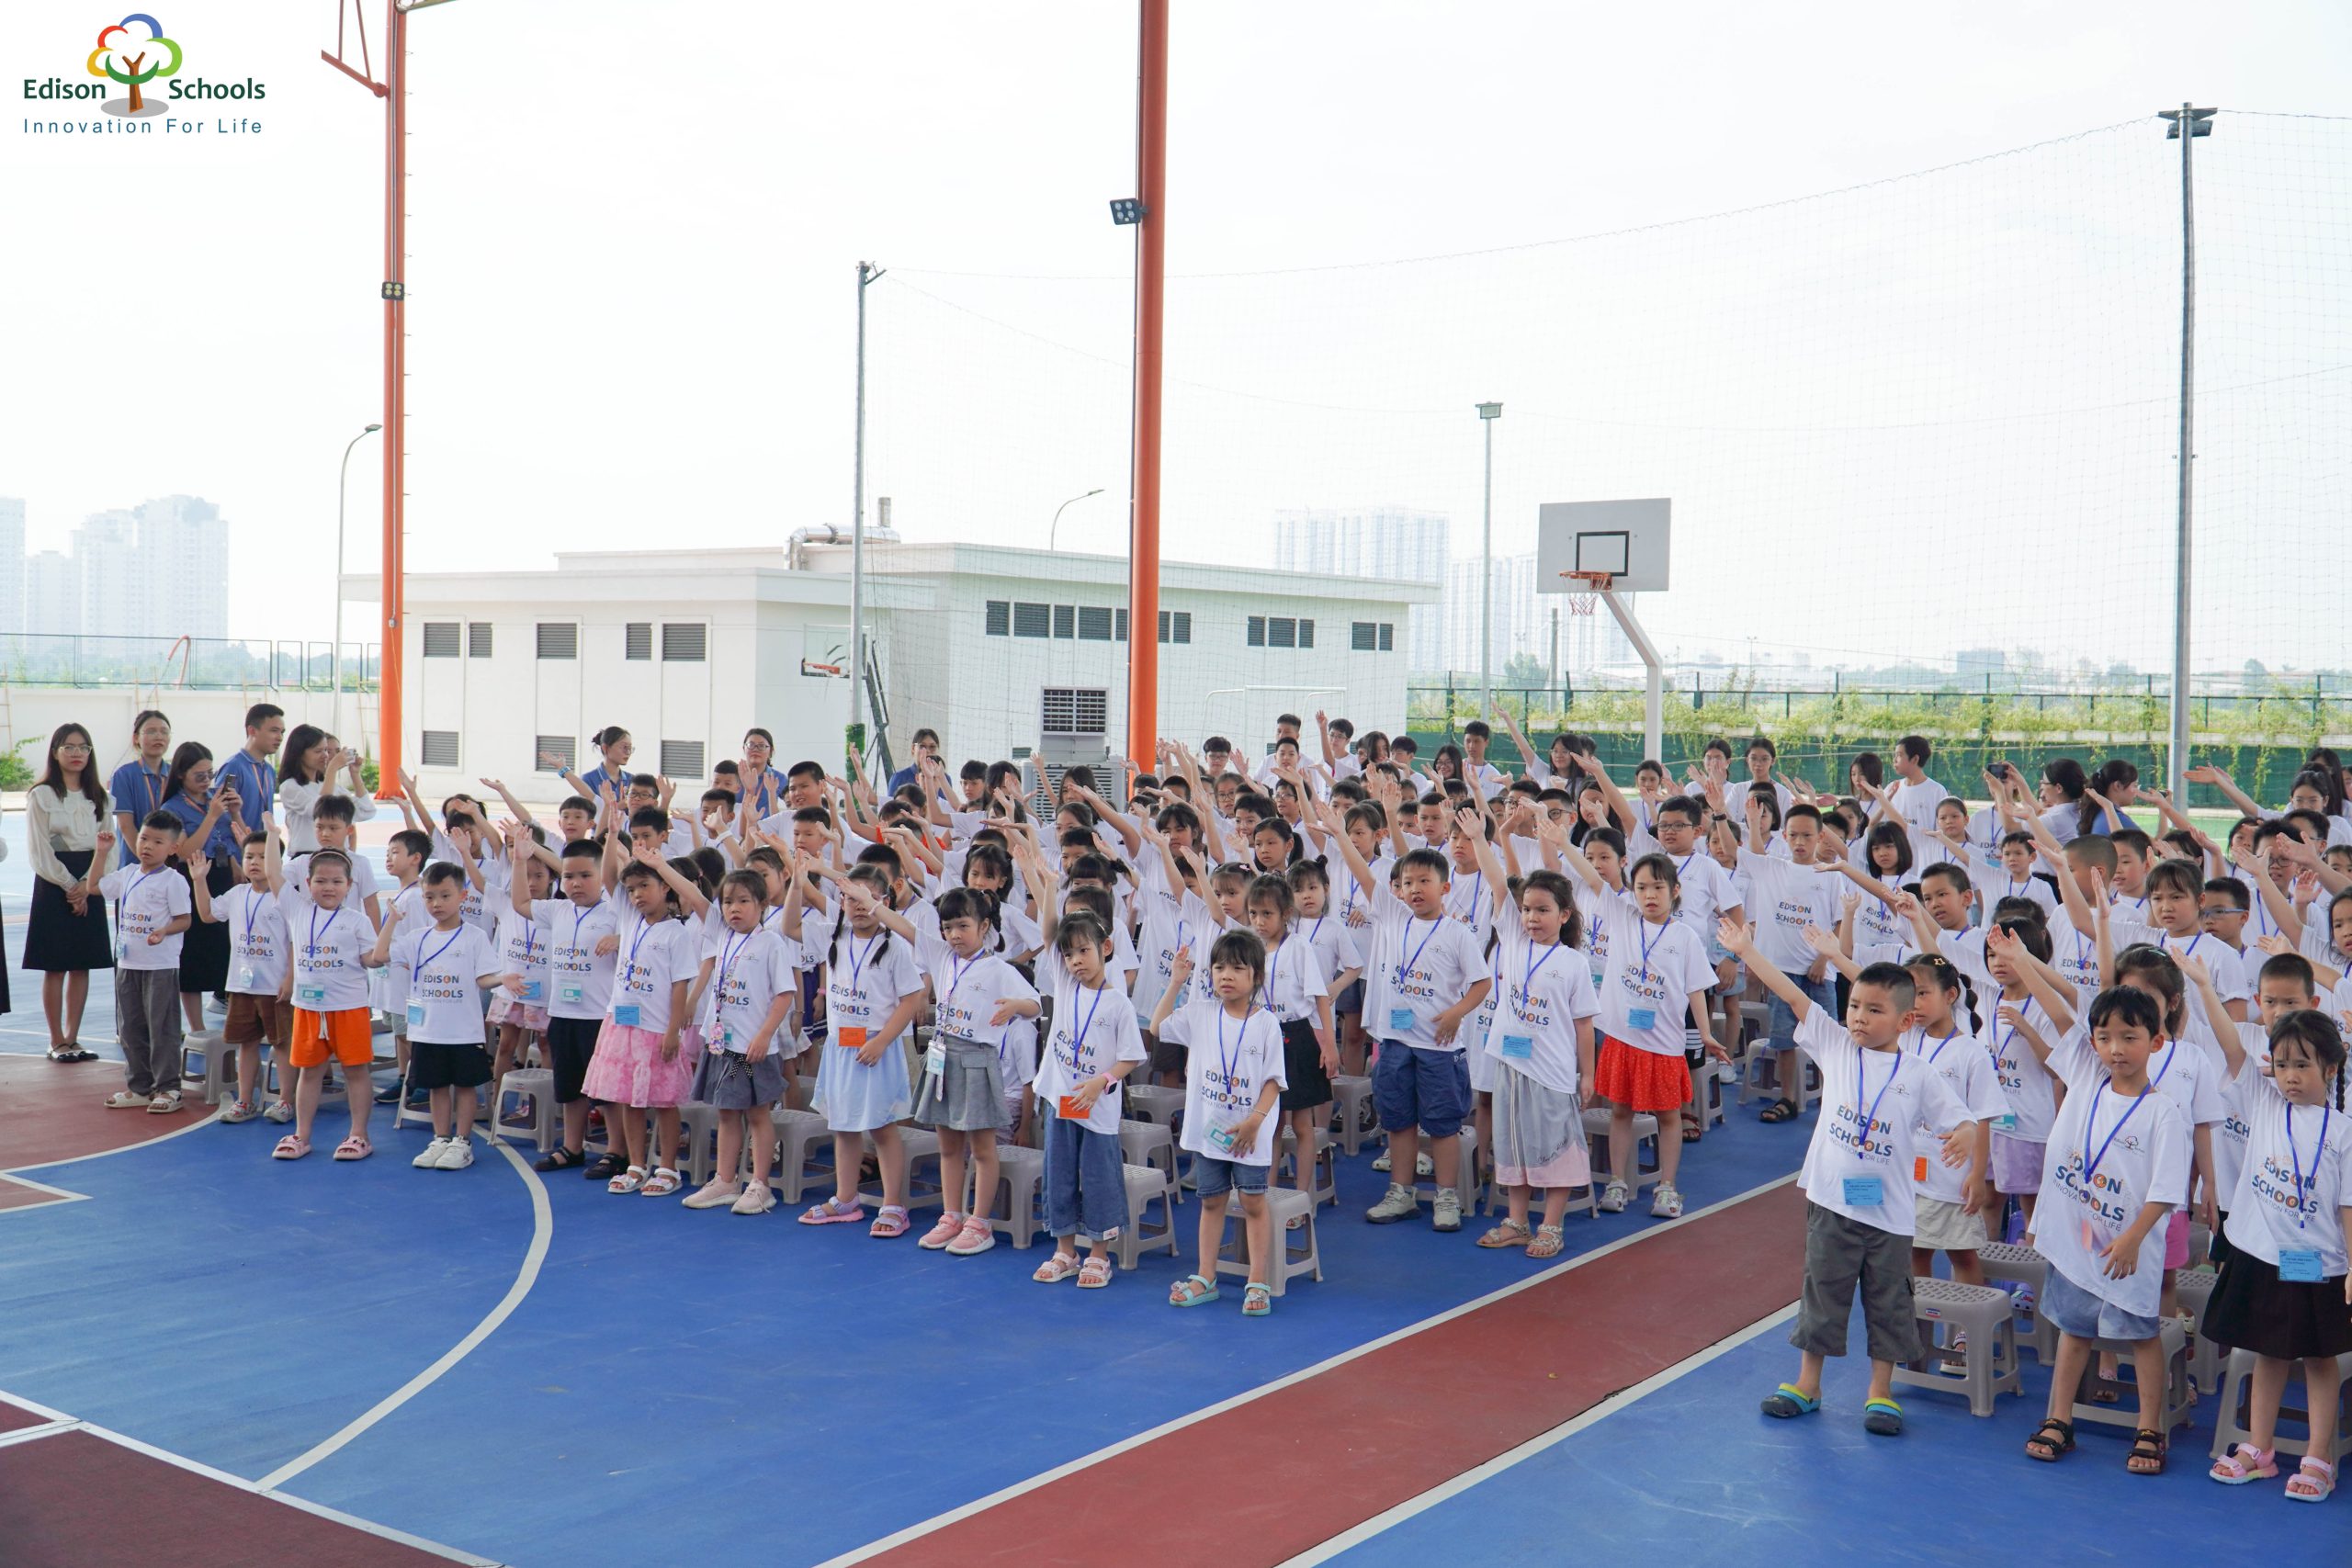 Mùa hè kì thú tại Edison Schools An Khánh chính thức bắt đầu